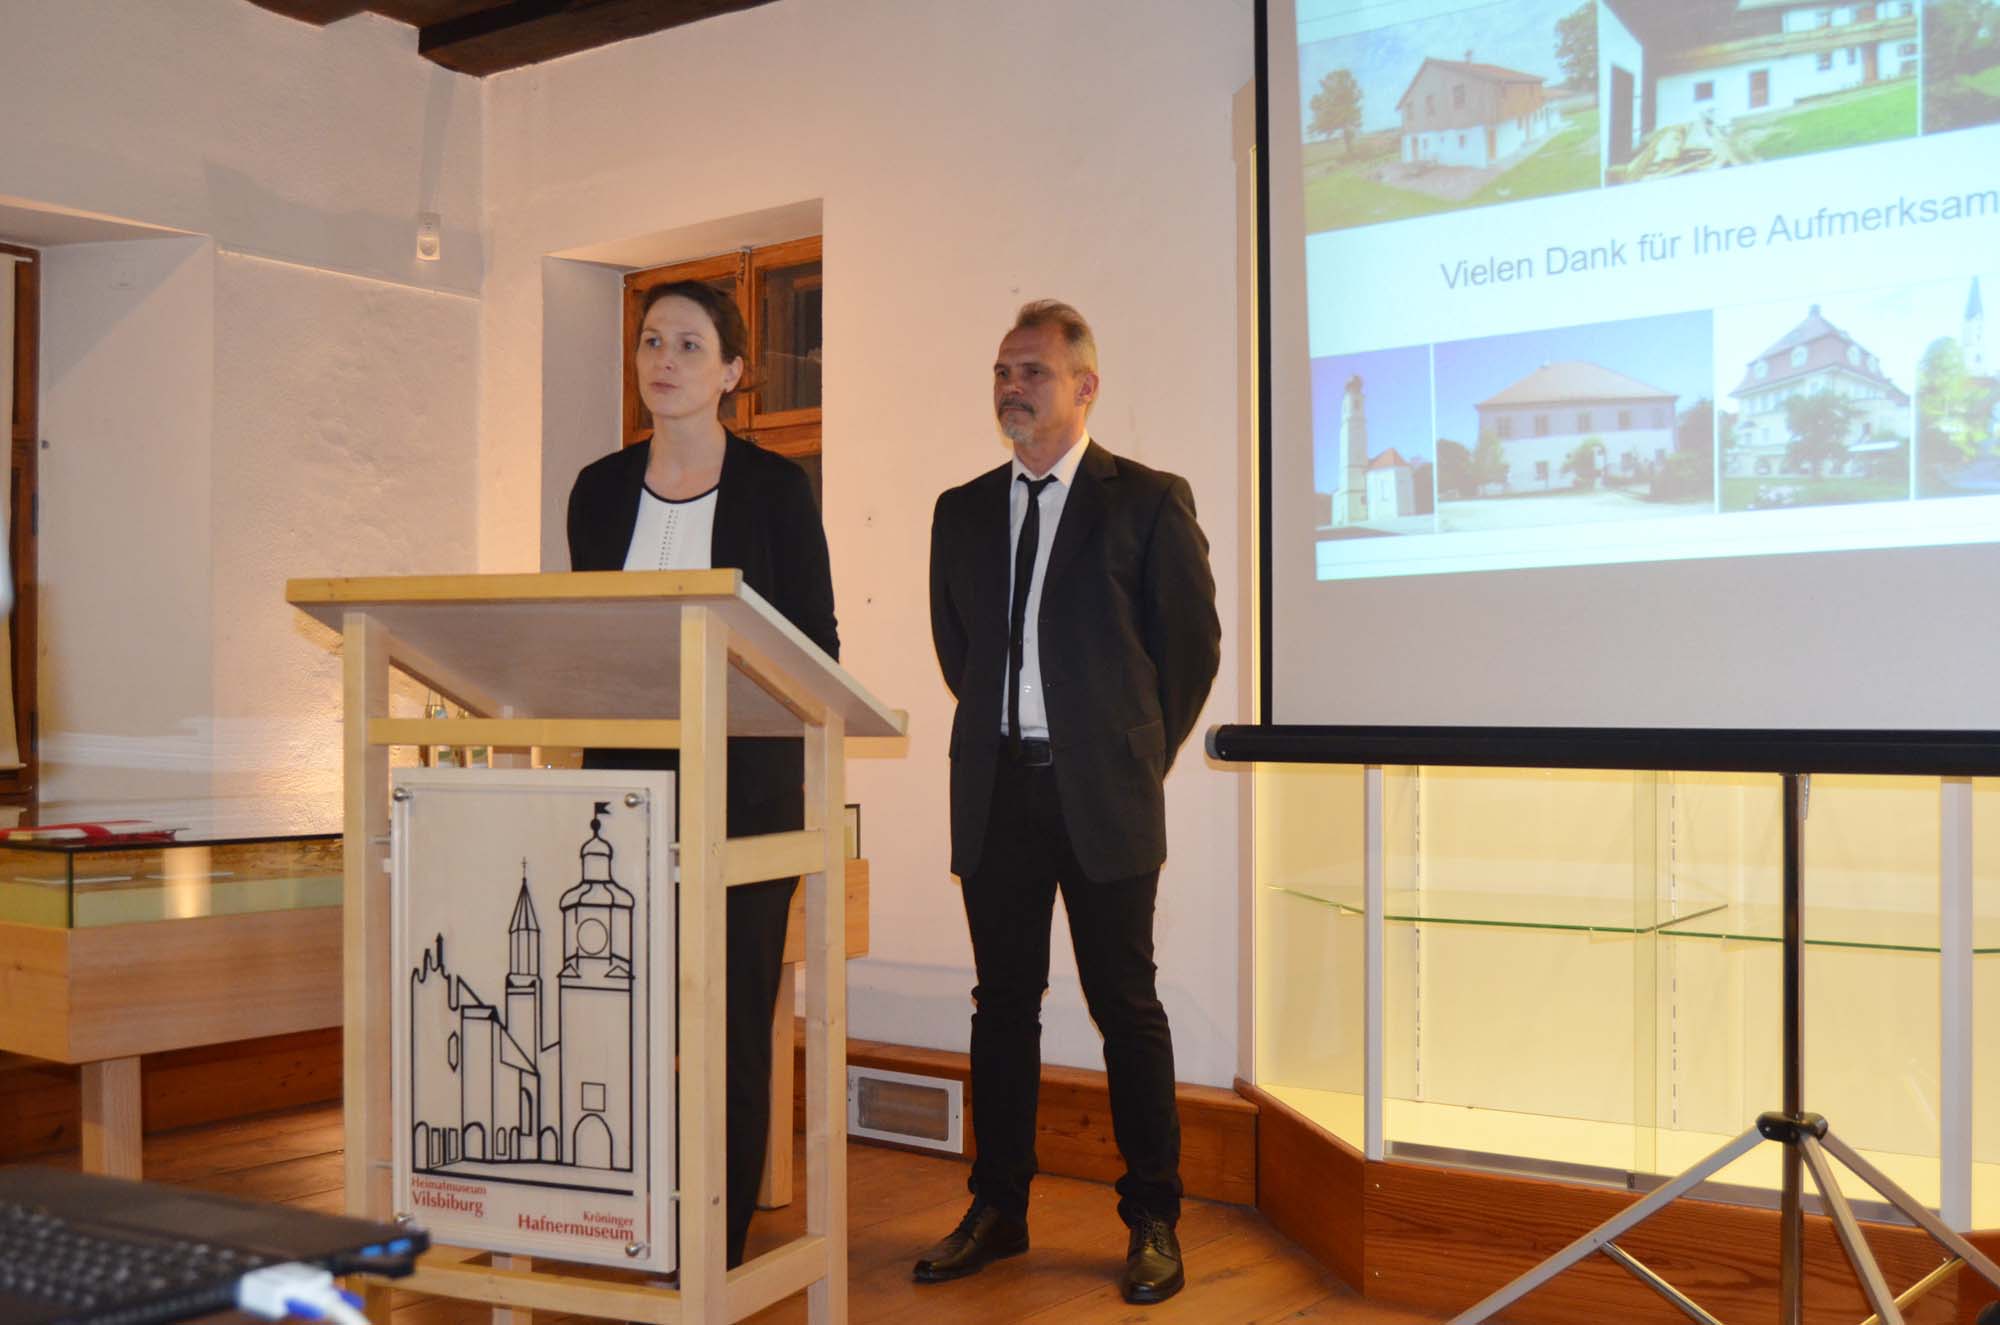 Museumsleiterin Annika Janßen bedankt sich bei Andreas Valenta für seine interessanten Ausführungen.